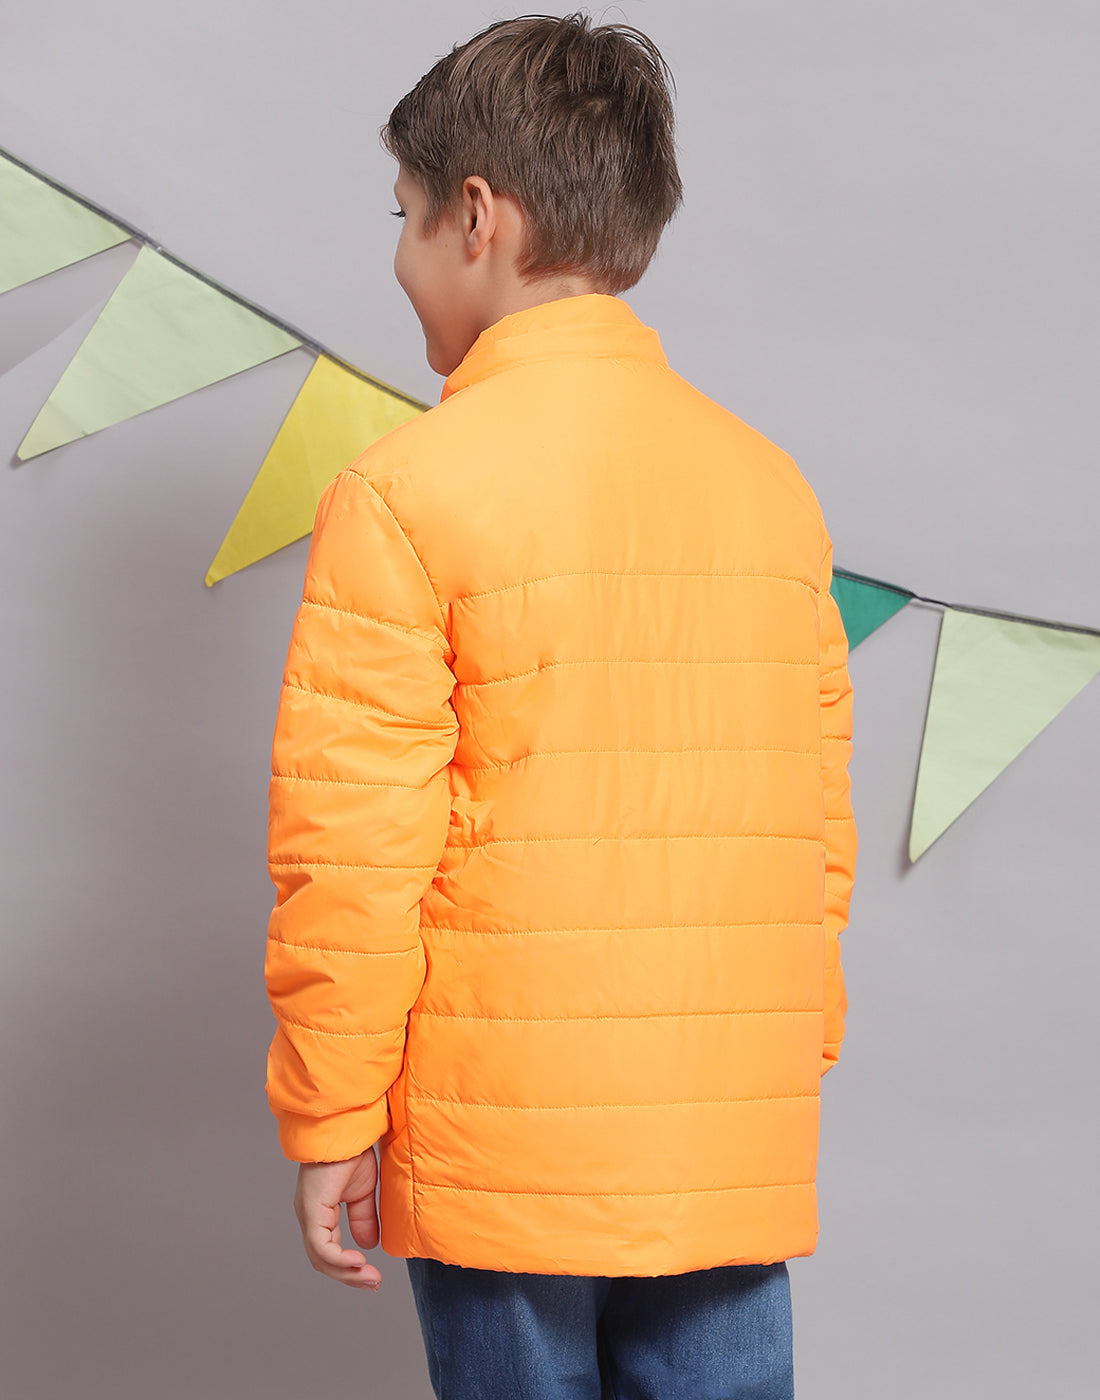 Boys Orange Solid Hooded Full Sleeve Boys Jacket